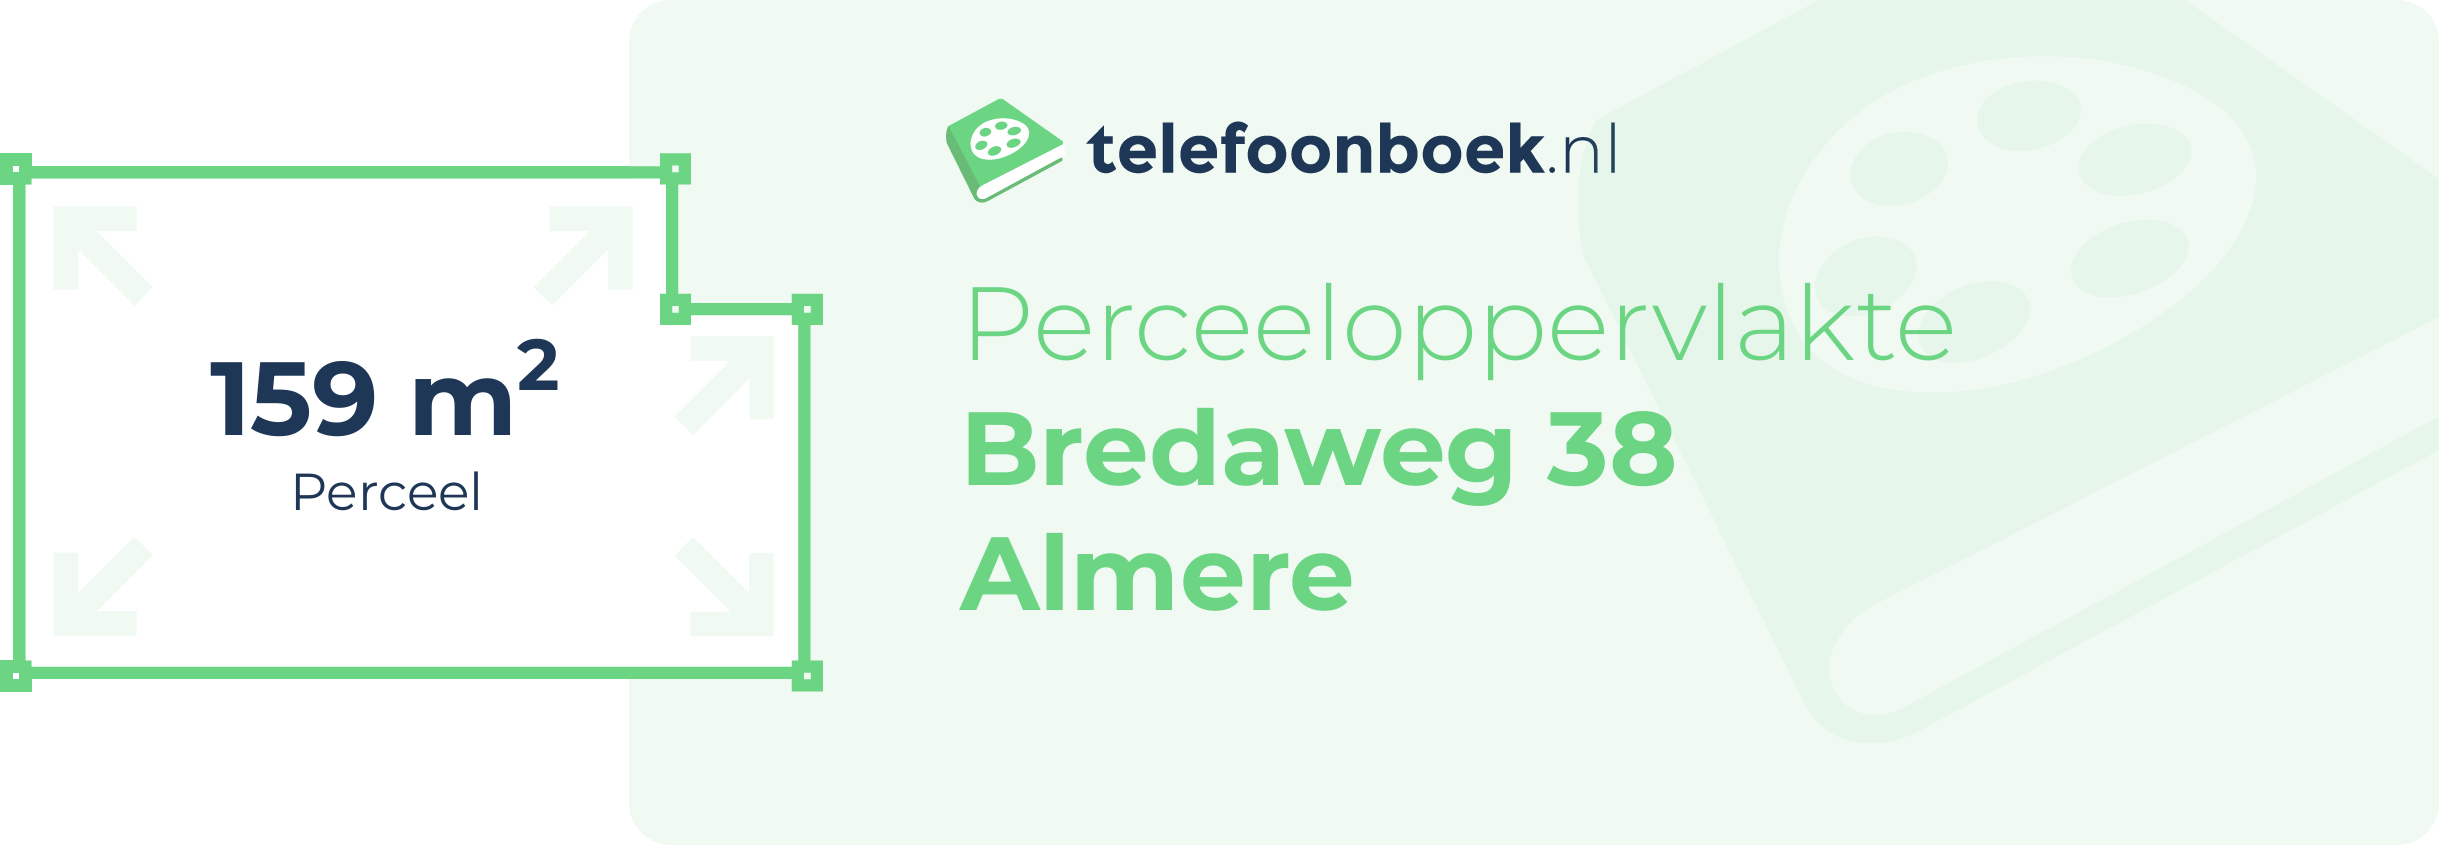 Perceeloppervlakte Bredaweg 38 Almere